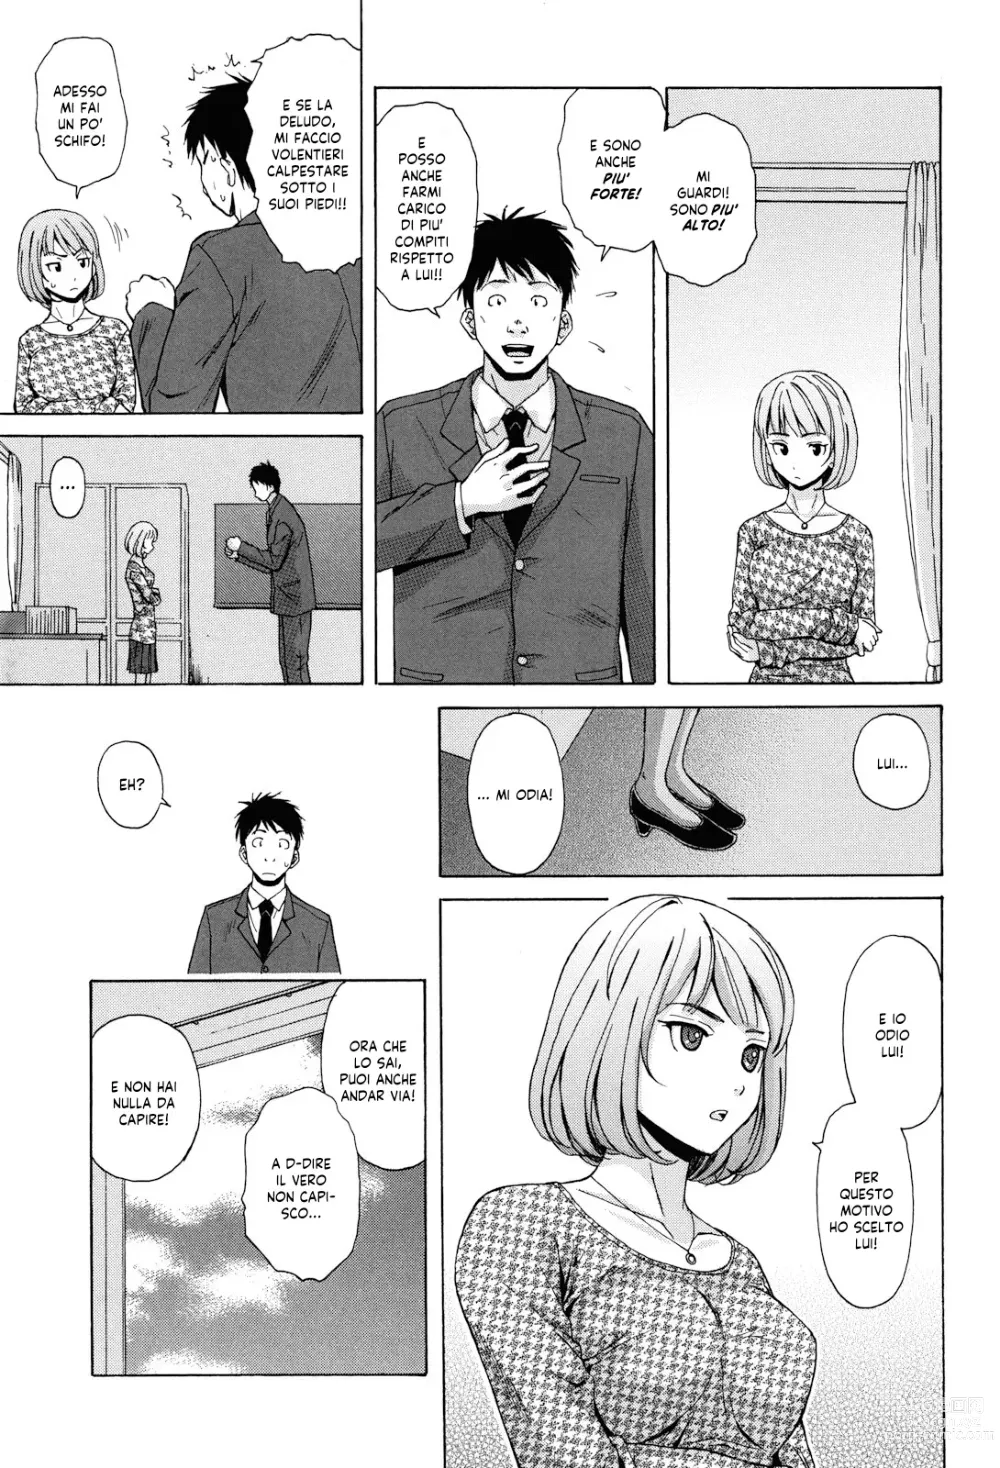 Page 16 of manga Sei Gentilmente Desiderato dalla tua Prof (decensored)